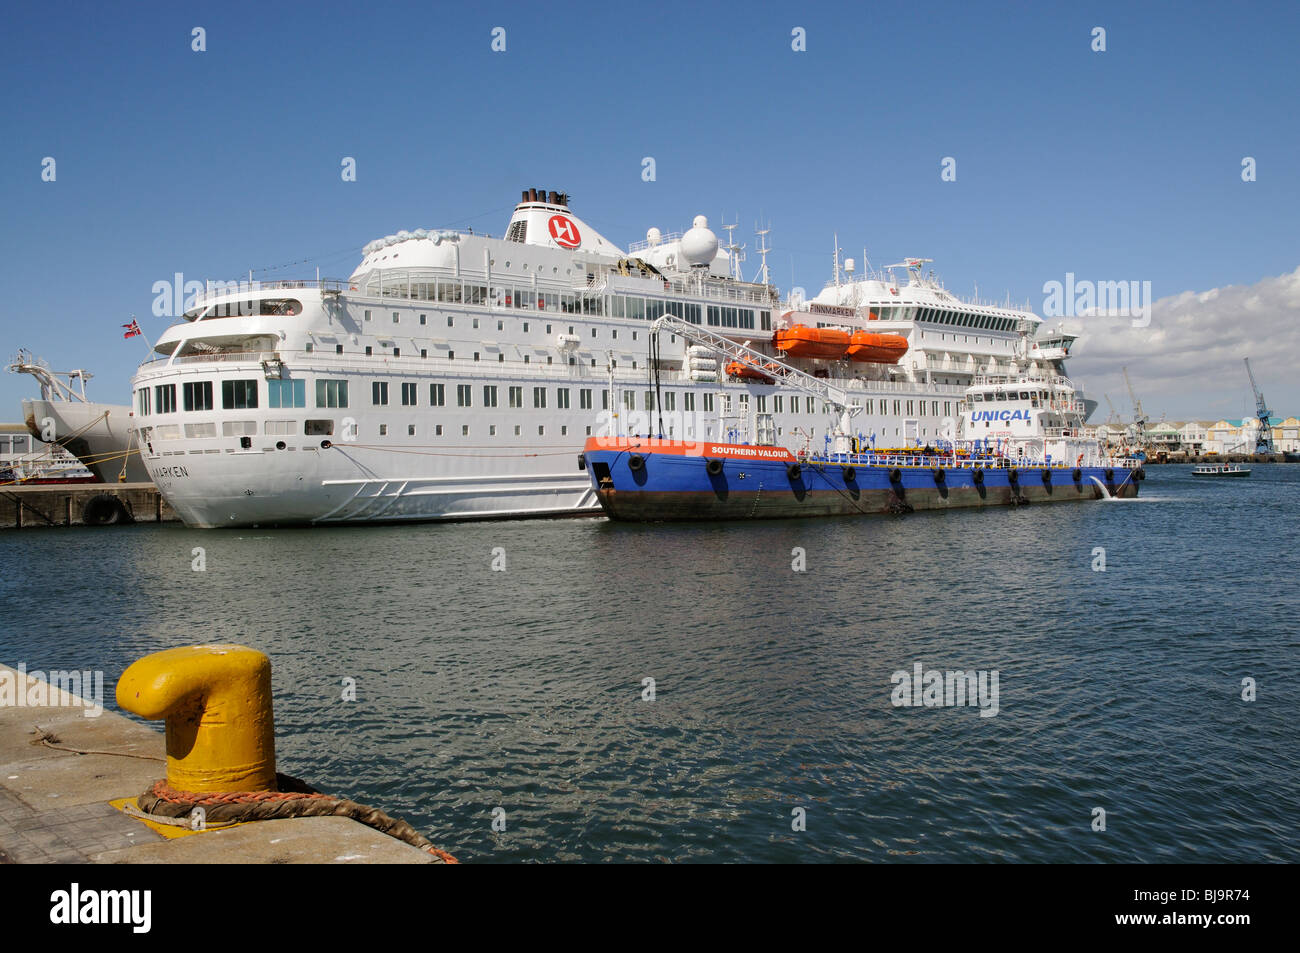 Bunker Schiff südlichen Tapferkeit liefert Kraftstoff in Finnmarken ein norwegisches Kreuzfahrtschiff in Südafrika Kapstadt Hafen Stockfoto